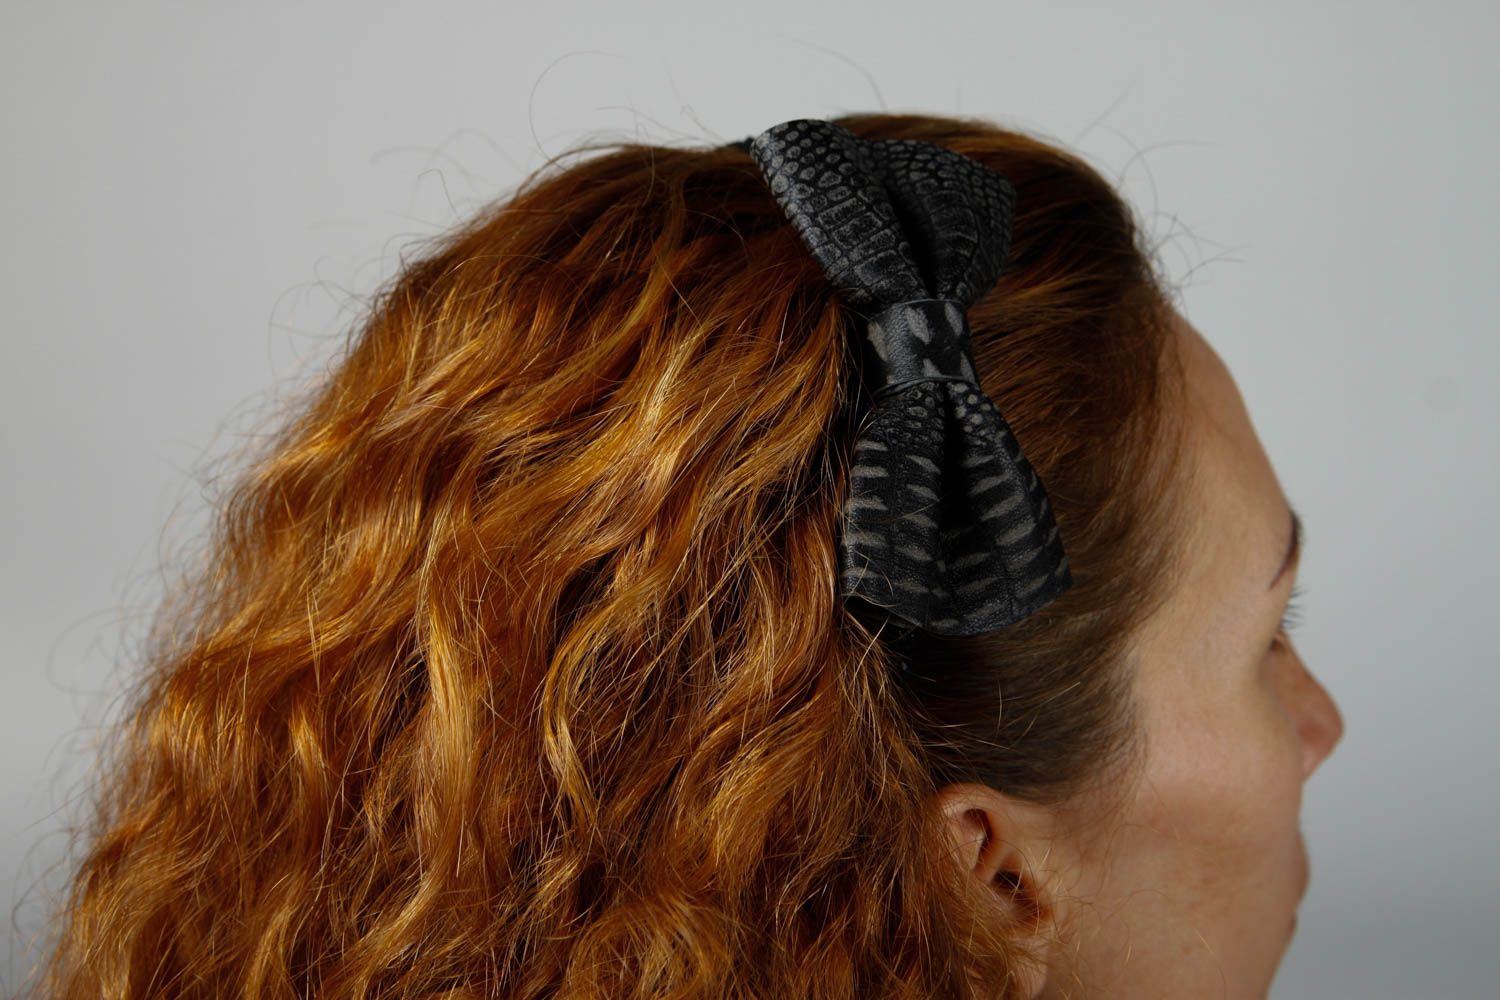 Аксессуар для волос ручной работы обруч на голову с бантом женский аксессуар фото 2